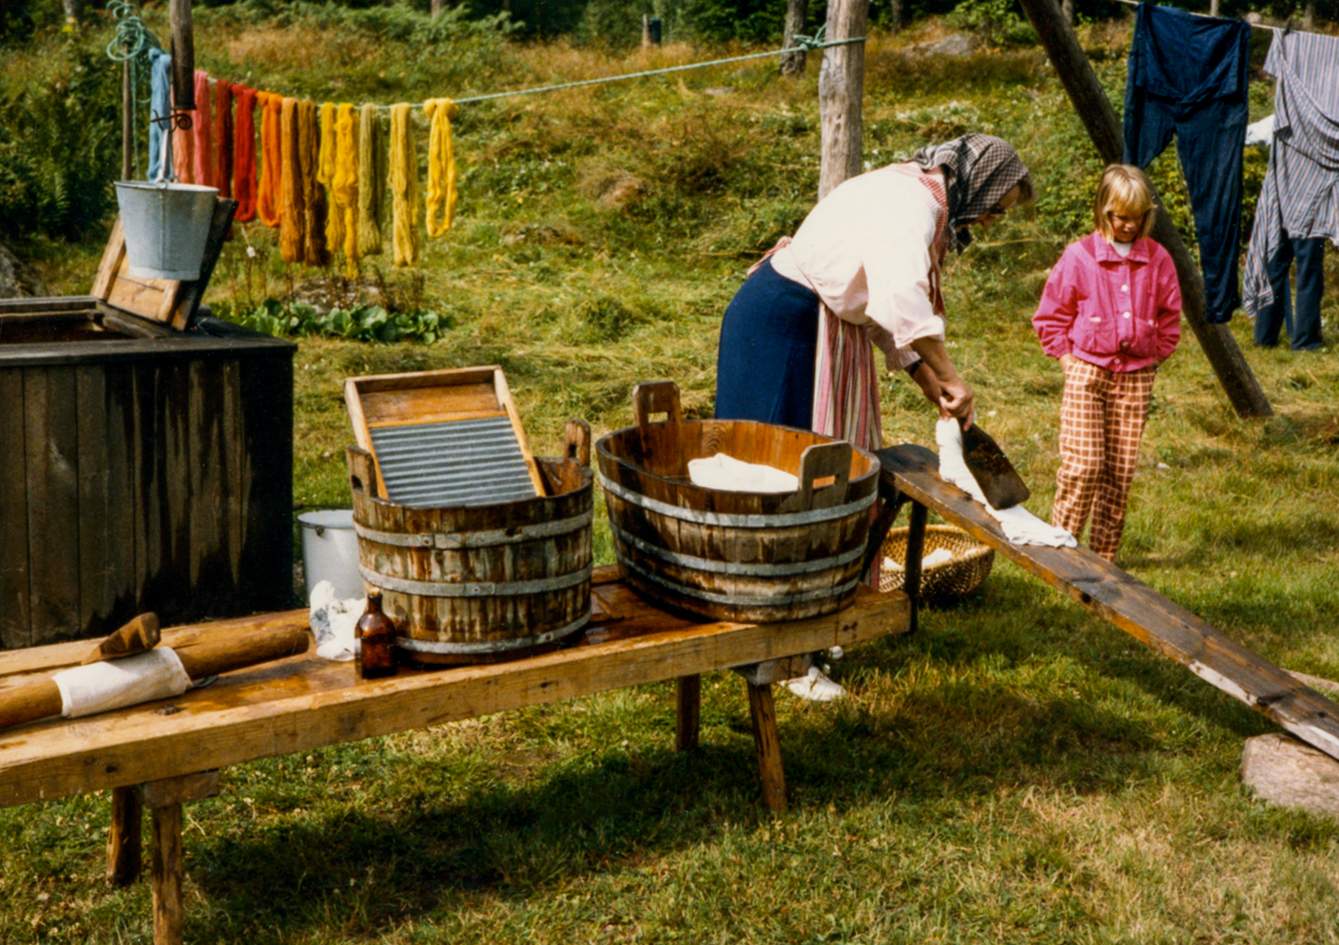 Elin tvättar 1986 Foto:okänd